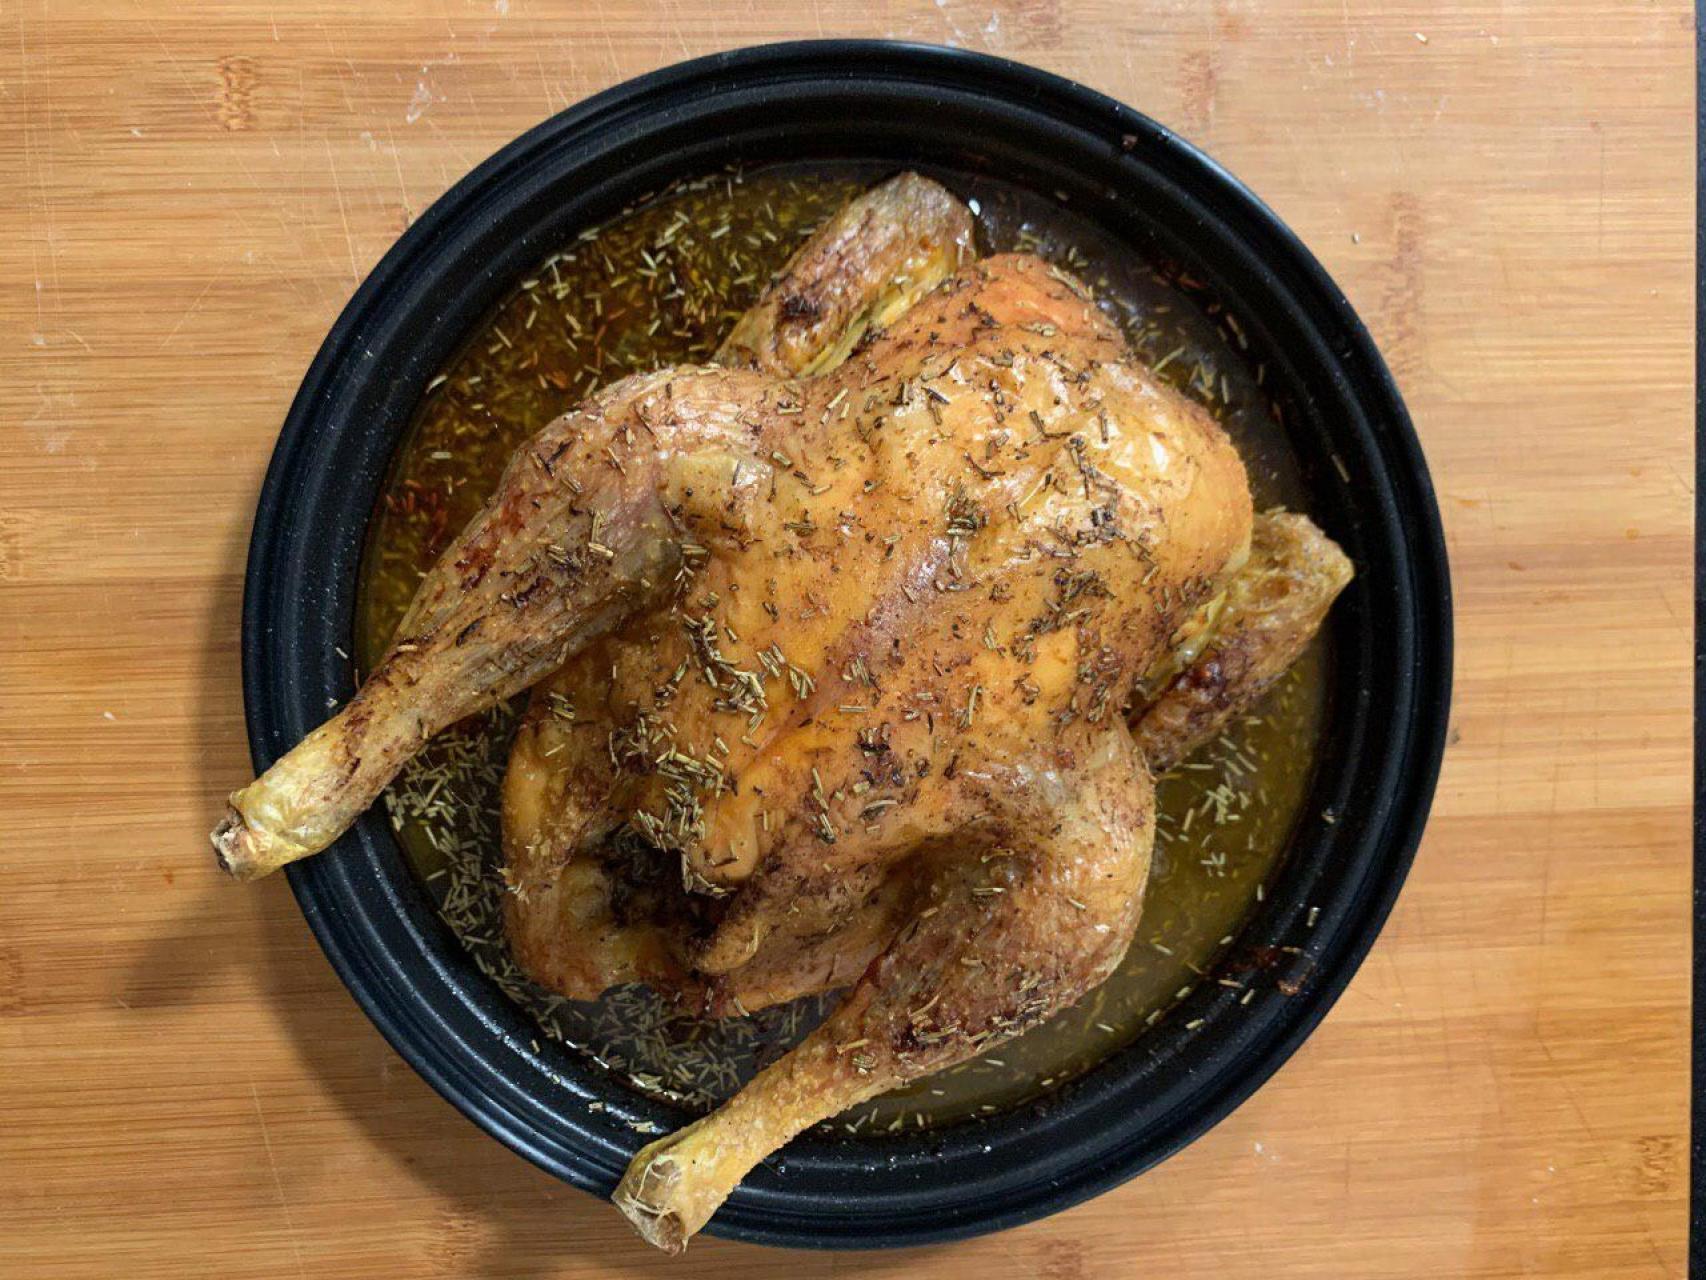 Pollo asado al horno, crujiente por fuera y tierno por dentro